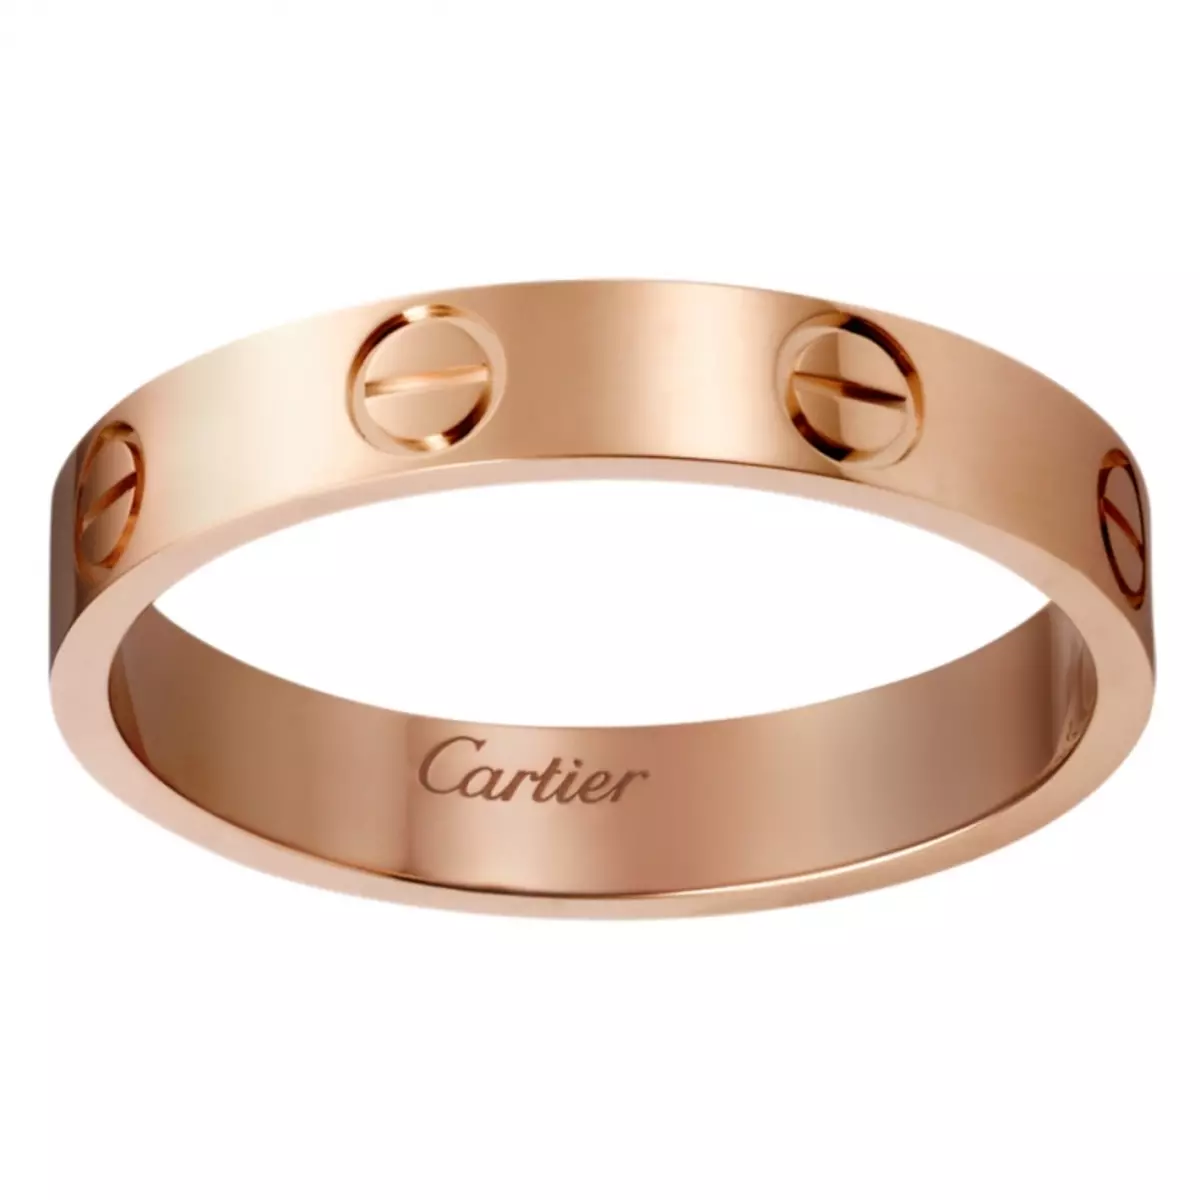 Cartier. Кольцо Картье лимонное золото. Обручальные кольца Картье. Обручальное кольцо Love Cartier. Кольца обручальные Картье Картье.